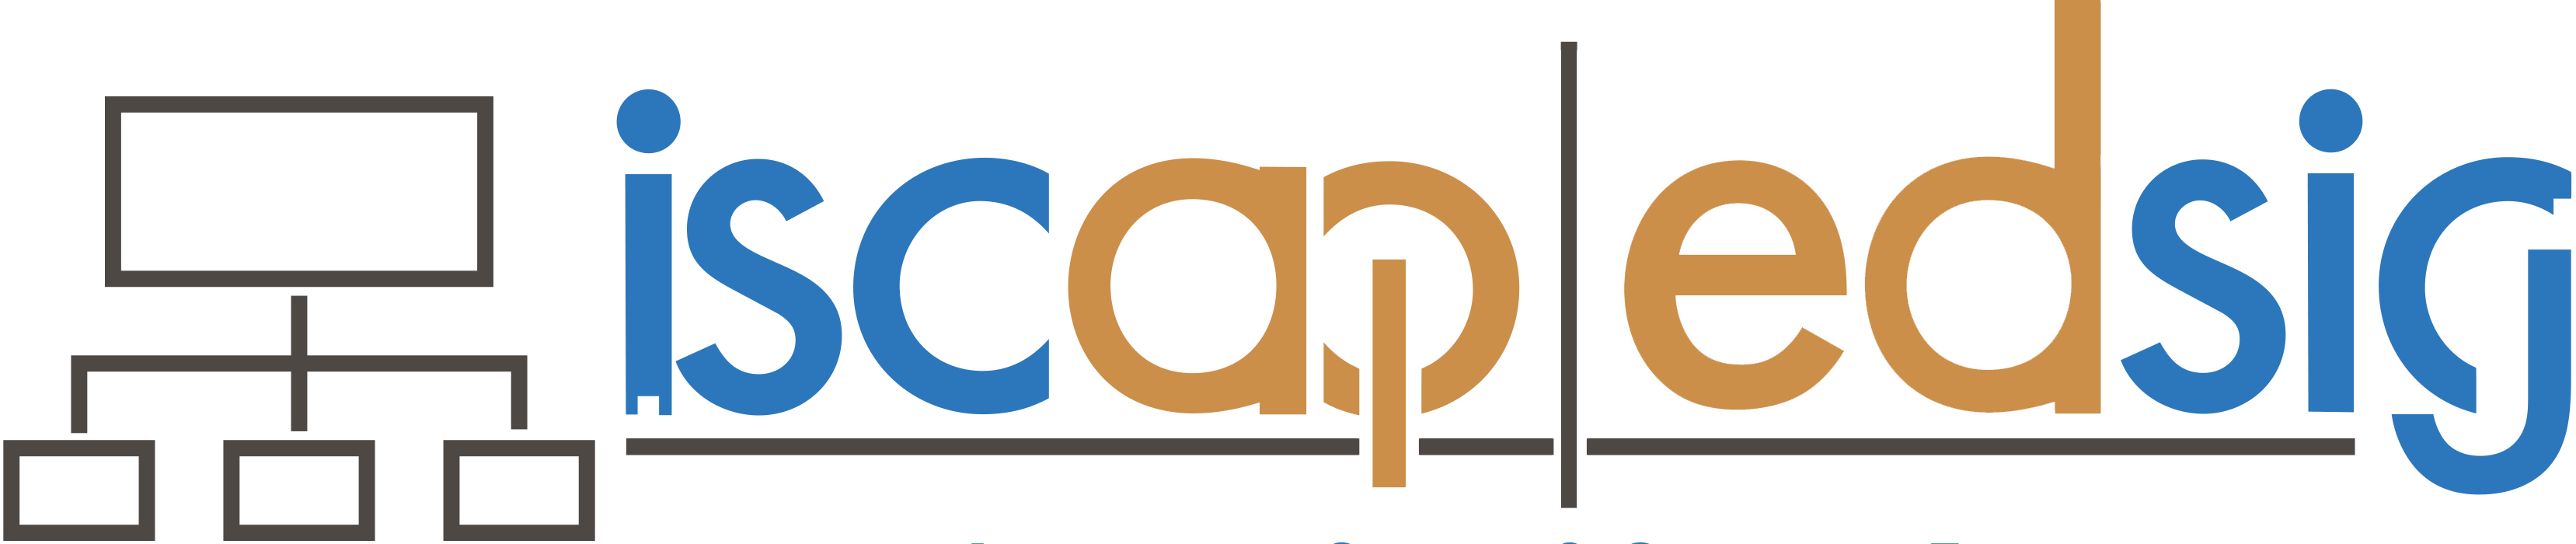 ISCAP-EDSIG